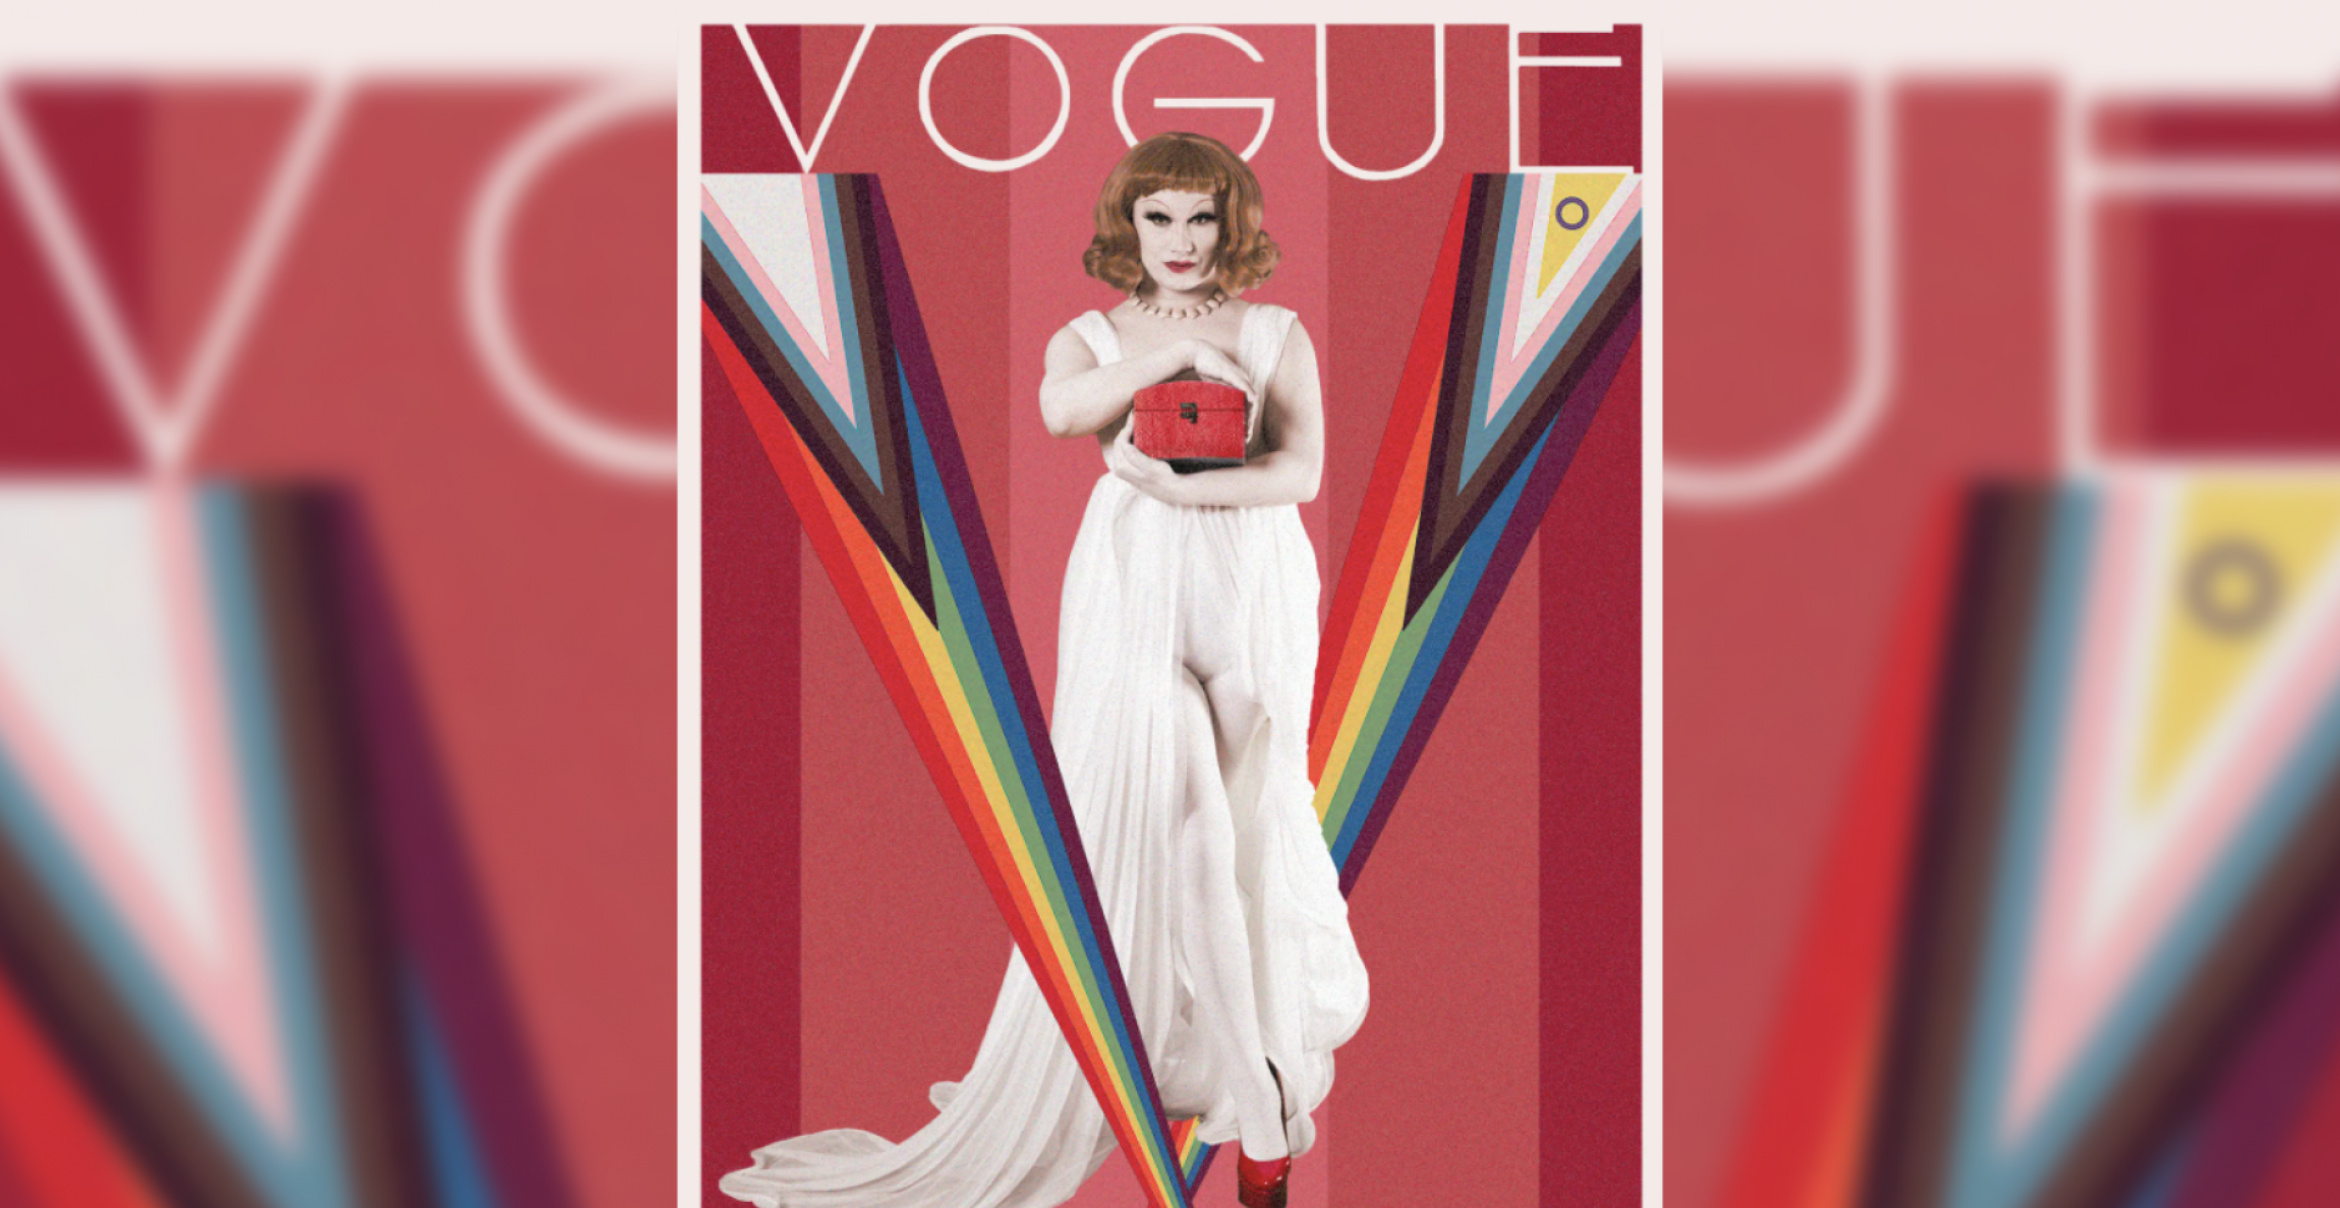 Drag Queens interpretieren Vogue-Cover neu